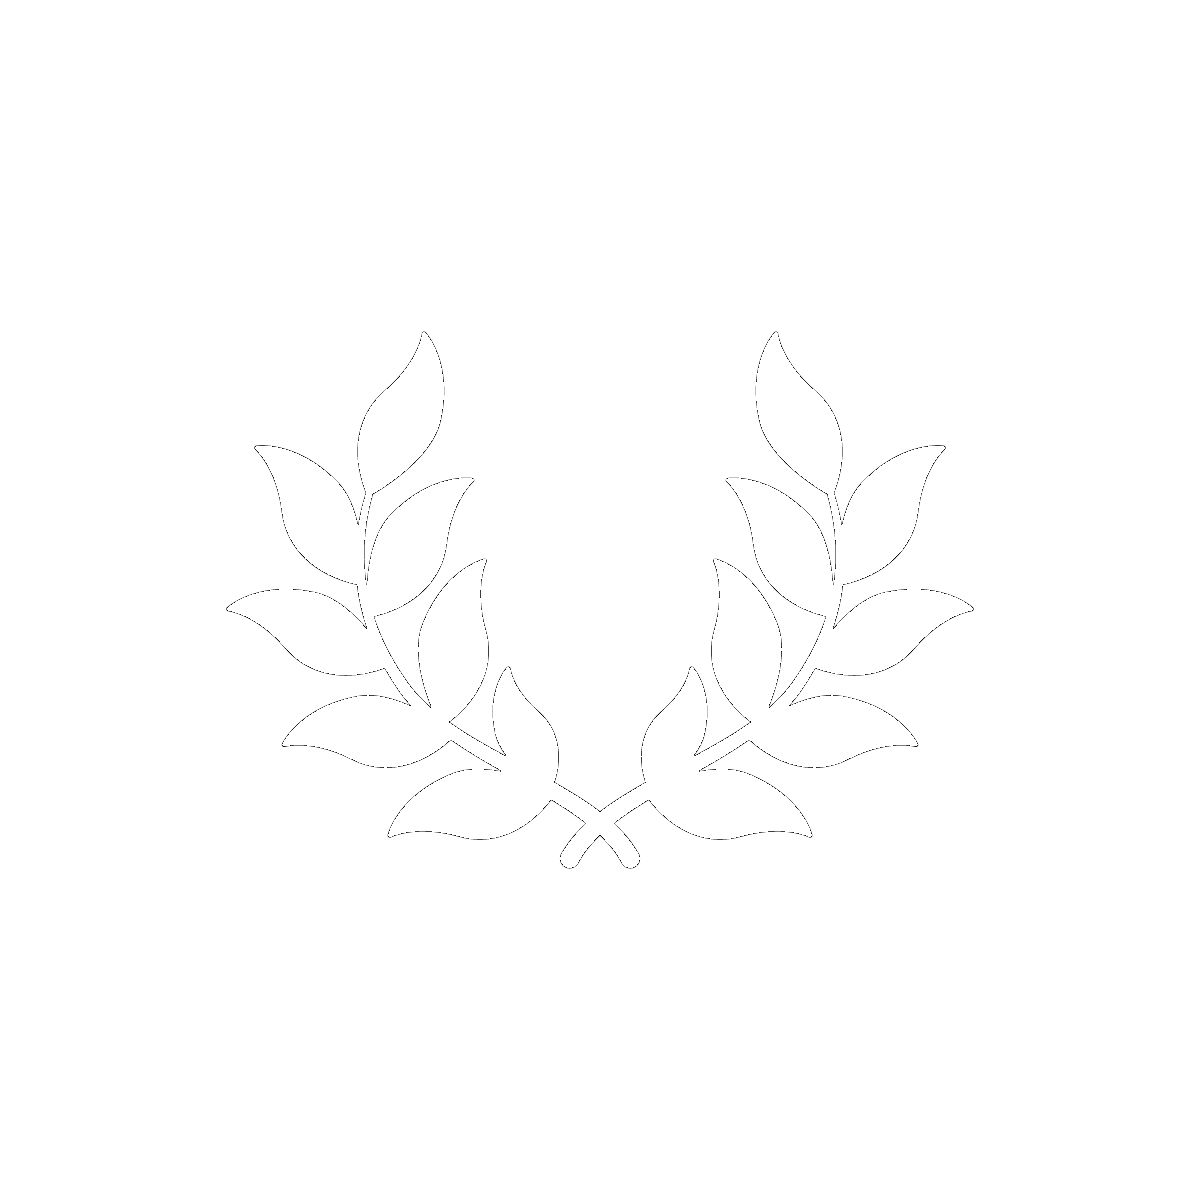 Symbol Caesar